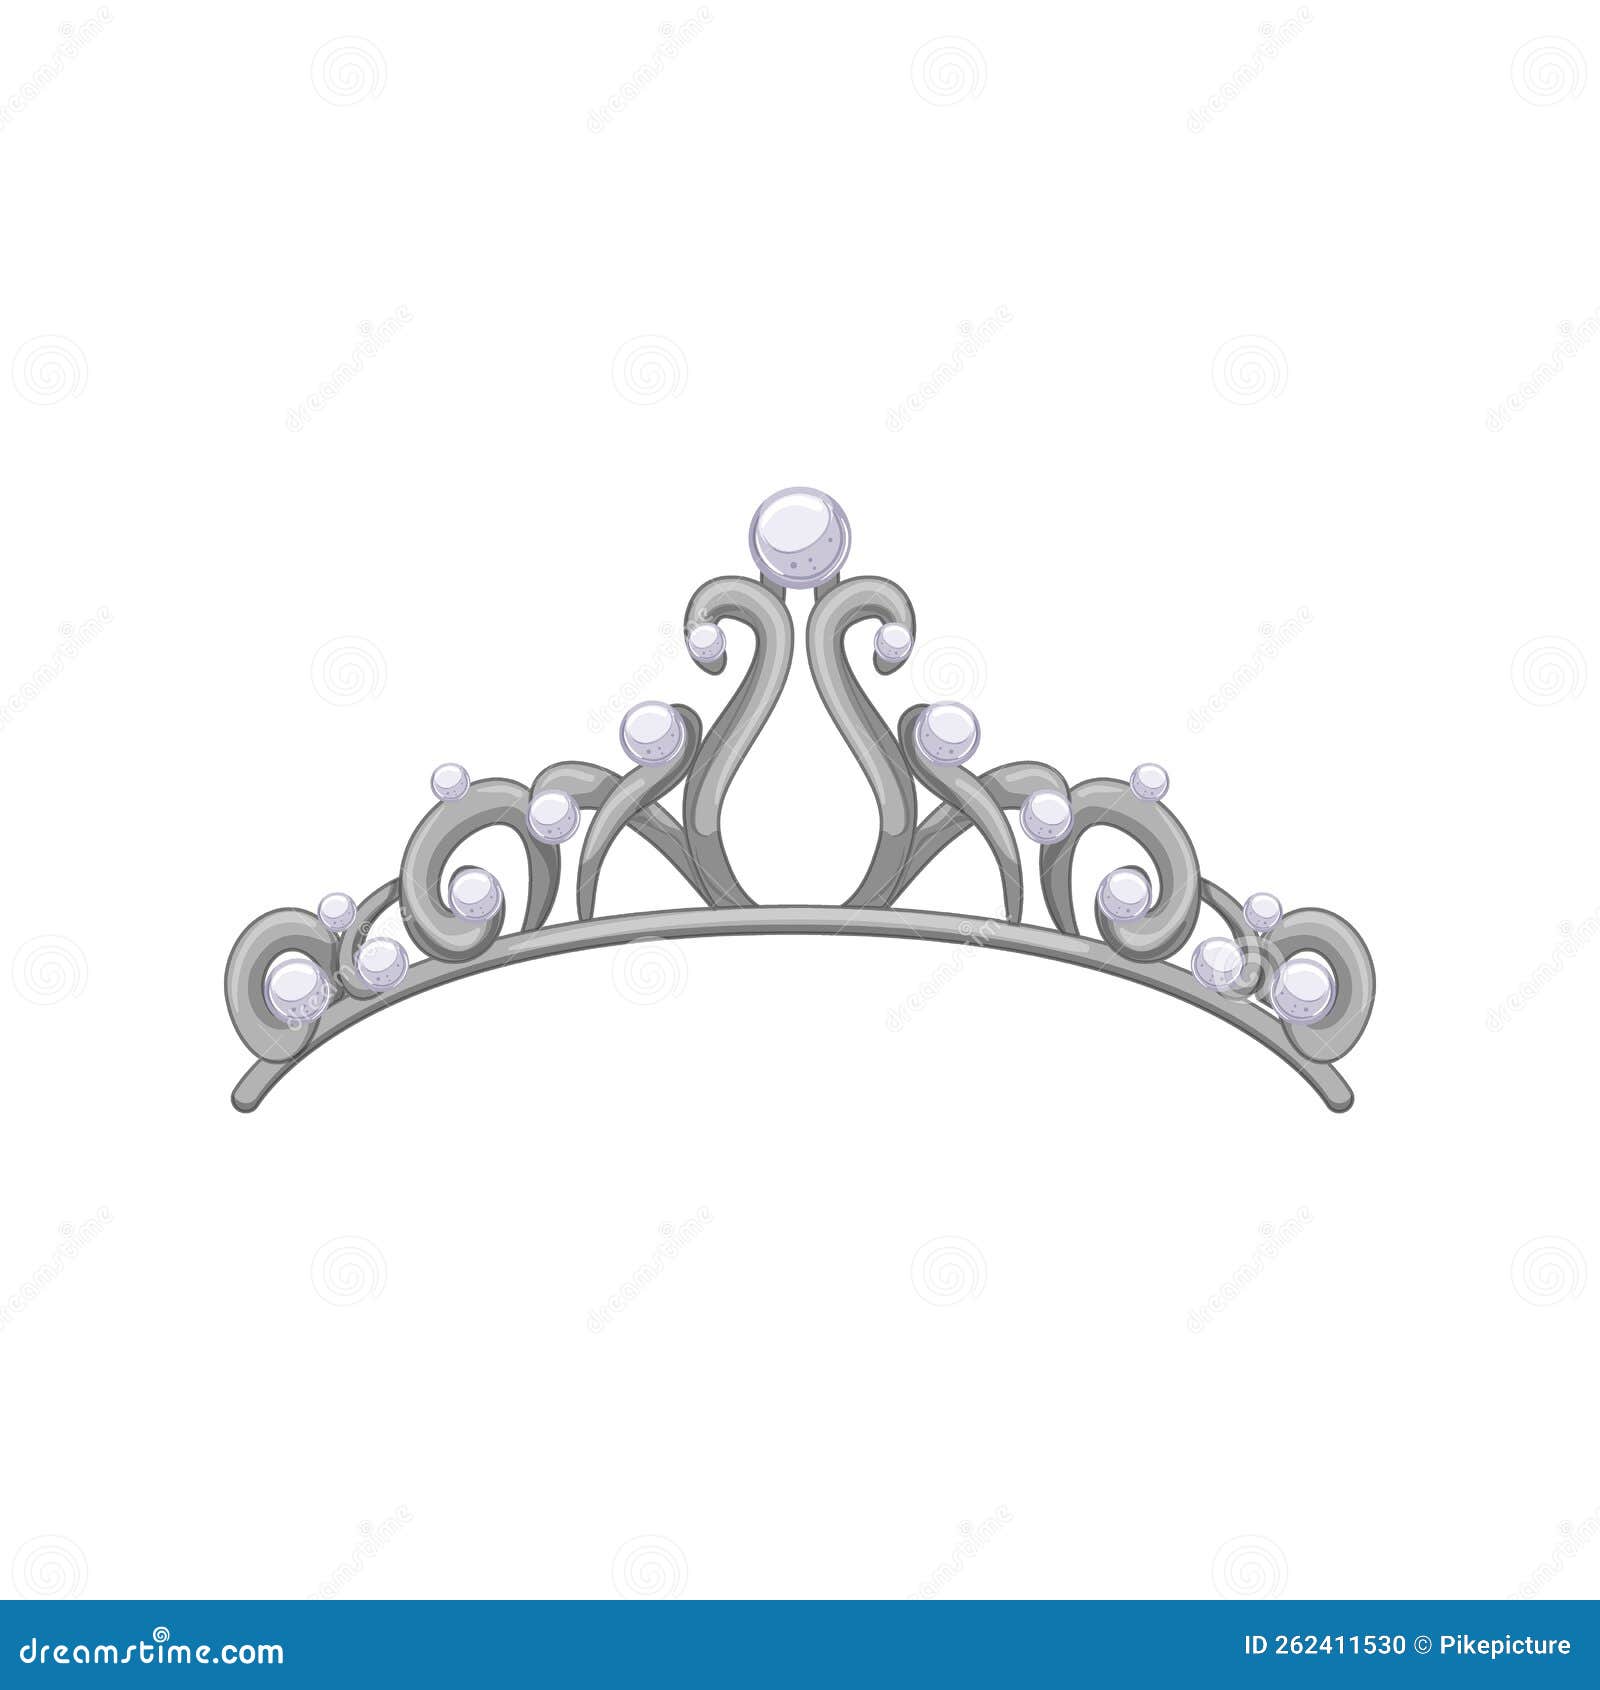 皇冠AI圖案素材免費下載 - 尺寸6250 × 6250px - 圖形ID401290870 - Lovepik